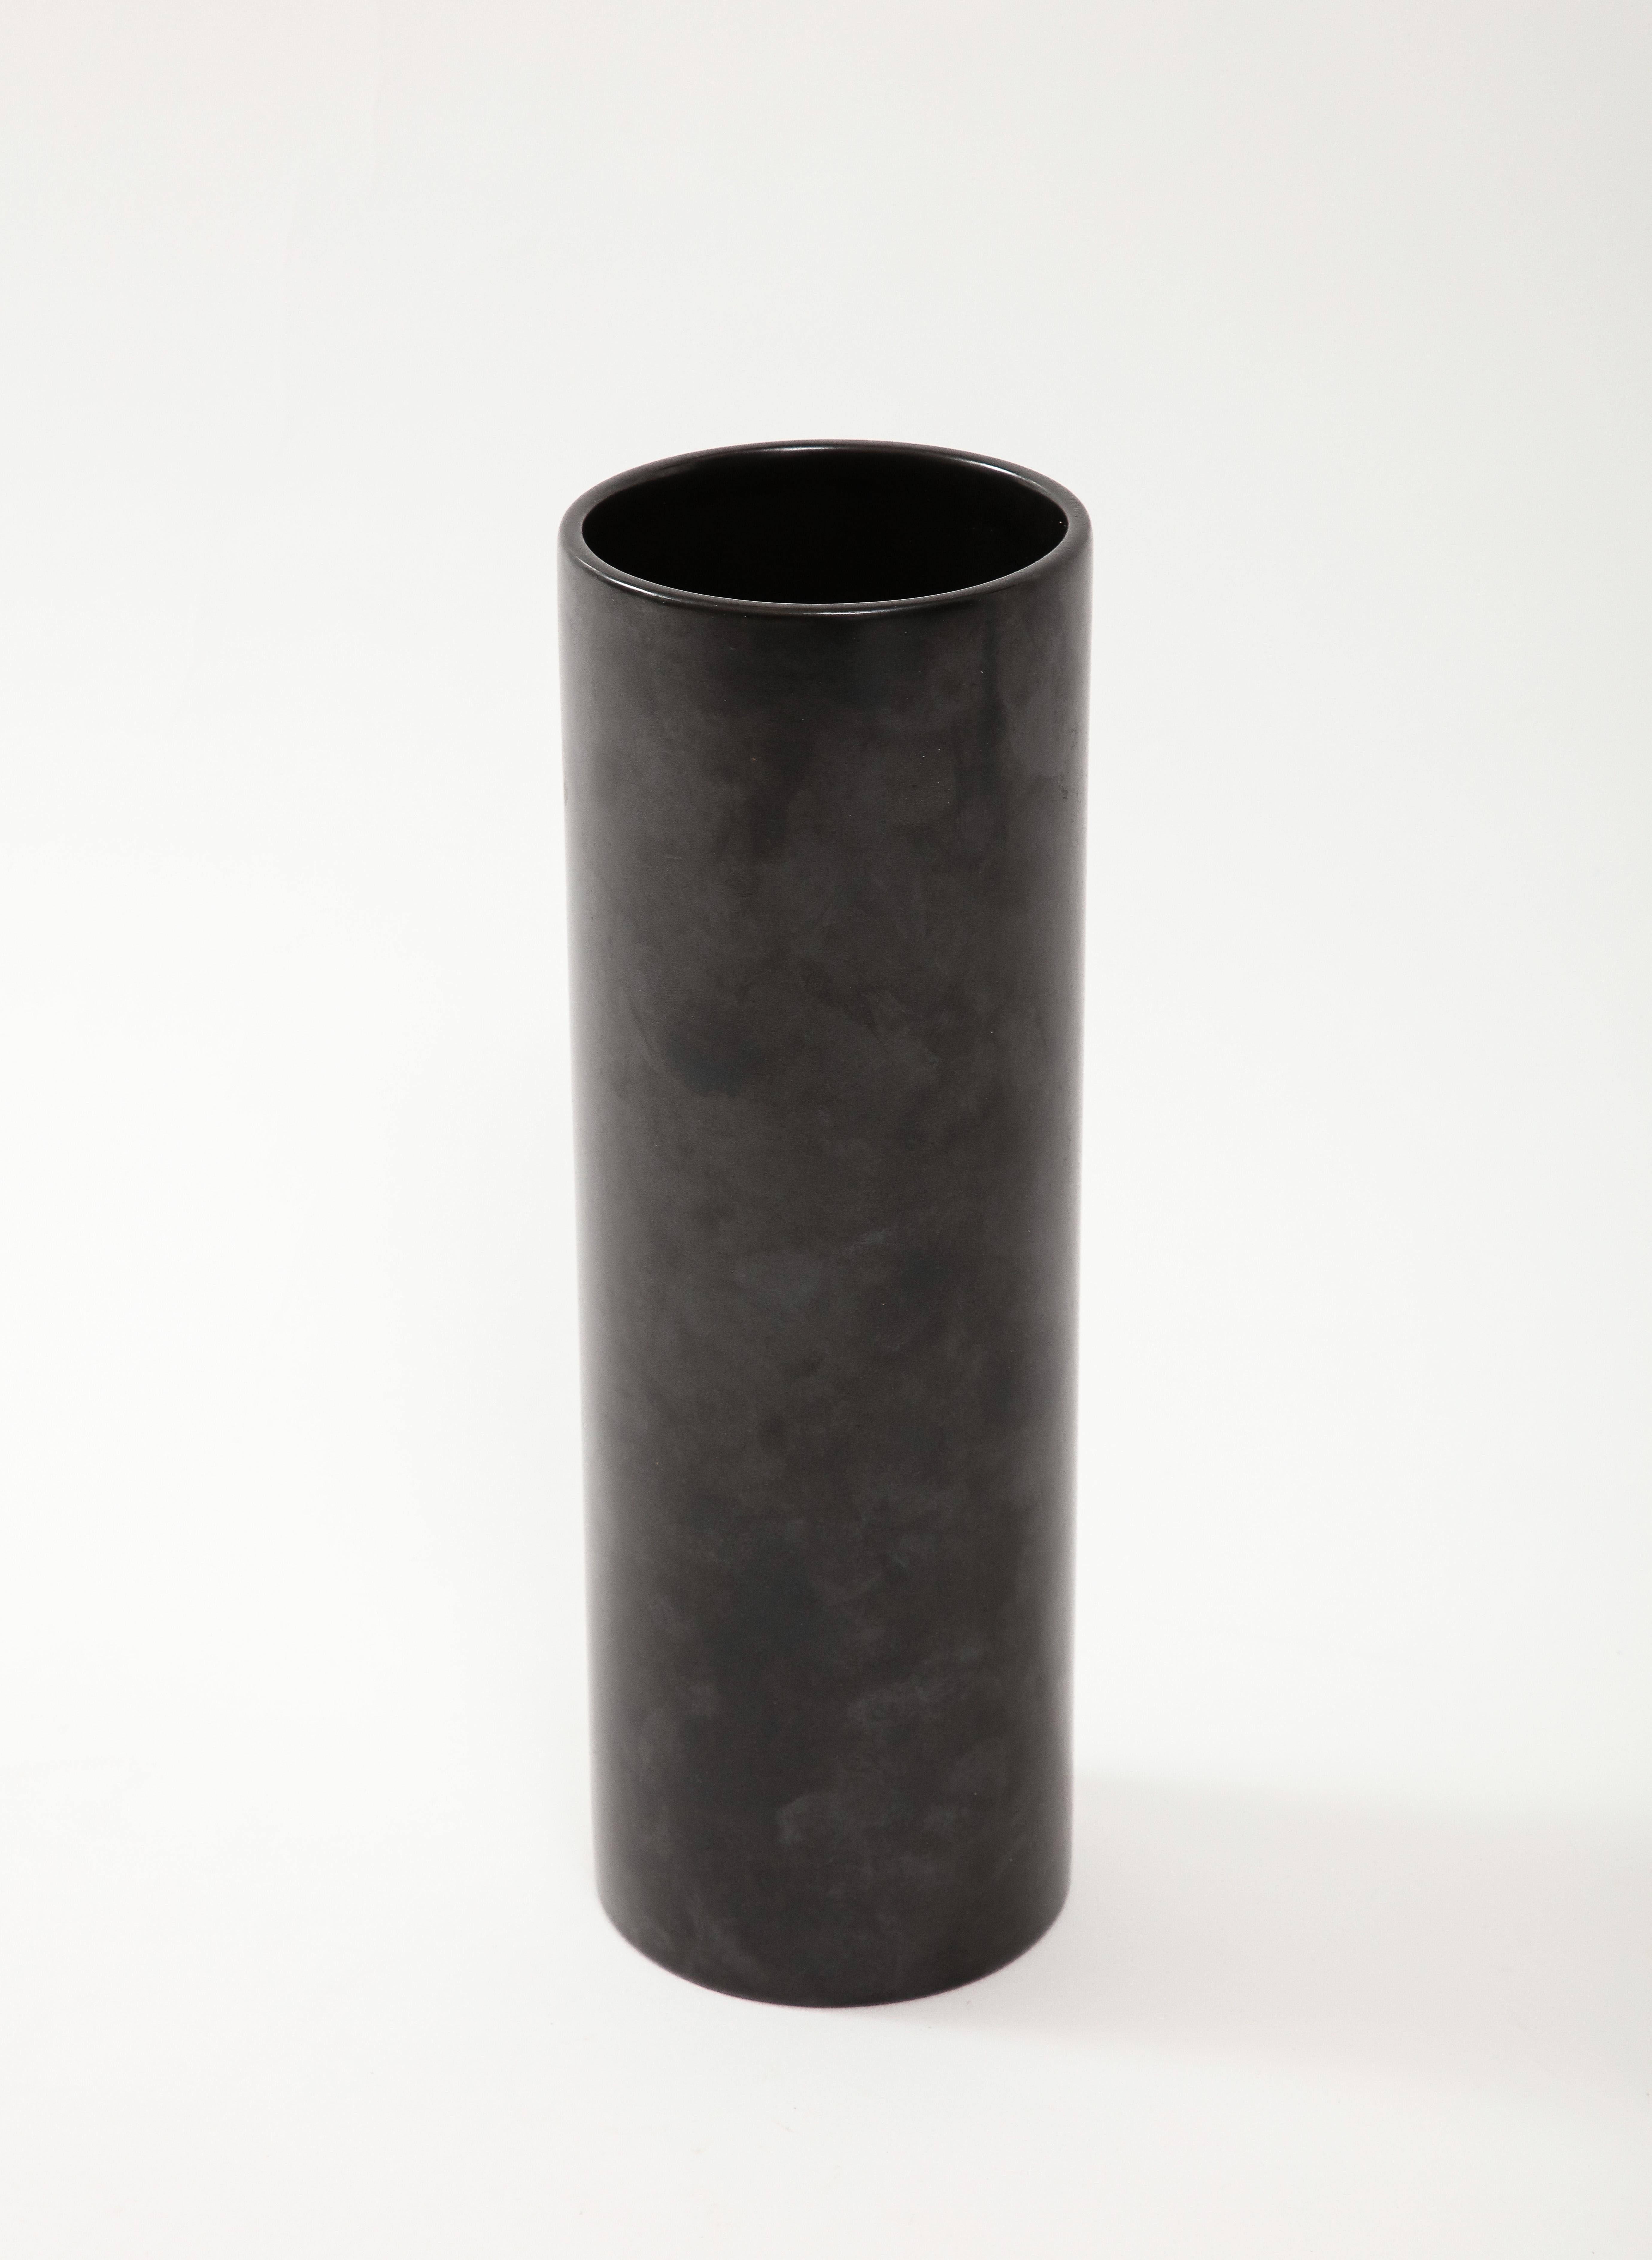 Large Georges Jouve Style Black Matte Cylinder Vase, France, c. 1950's For Sale 2